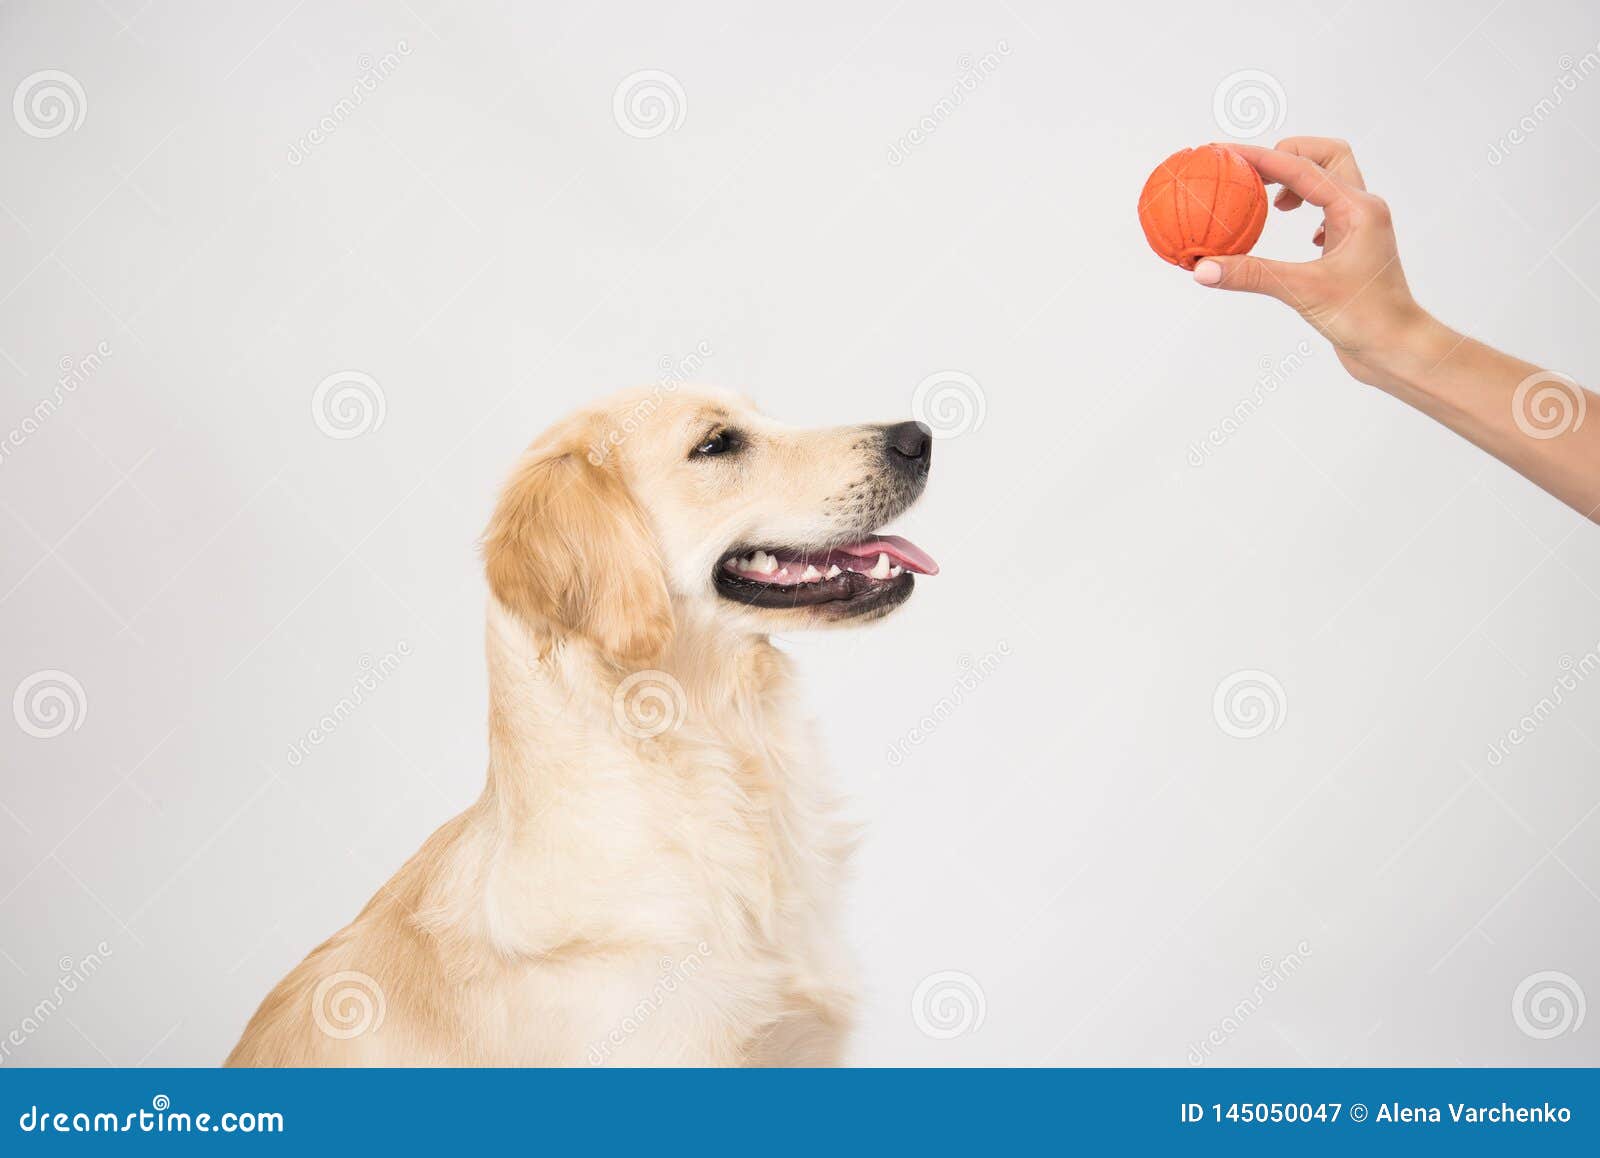 Um cão de goleiro deitado sobre branco com um brinquedo. Feliz e sorridente cão-puteiro Golden Retriever deitado na cama de cão sobre branco com brinquedo de bola